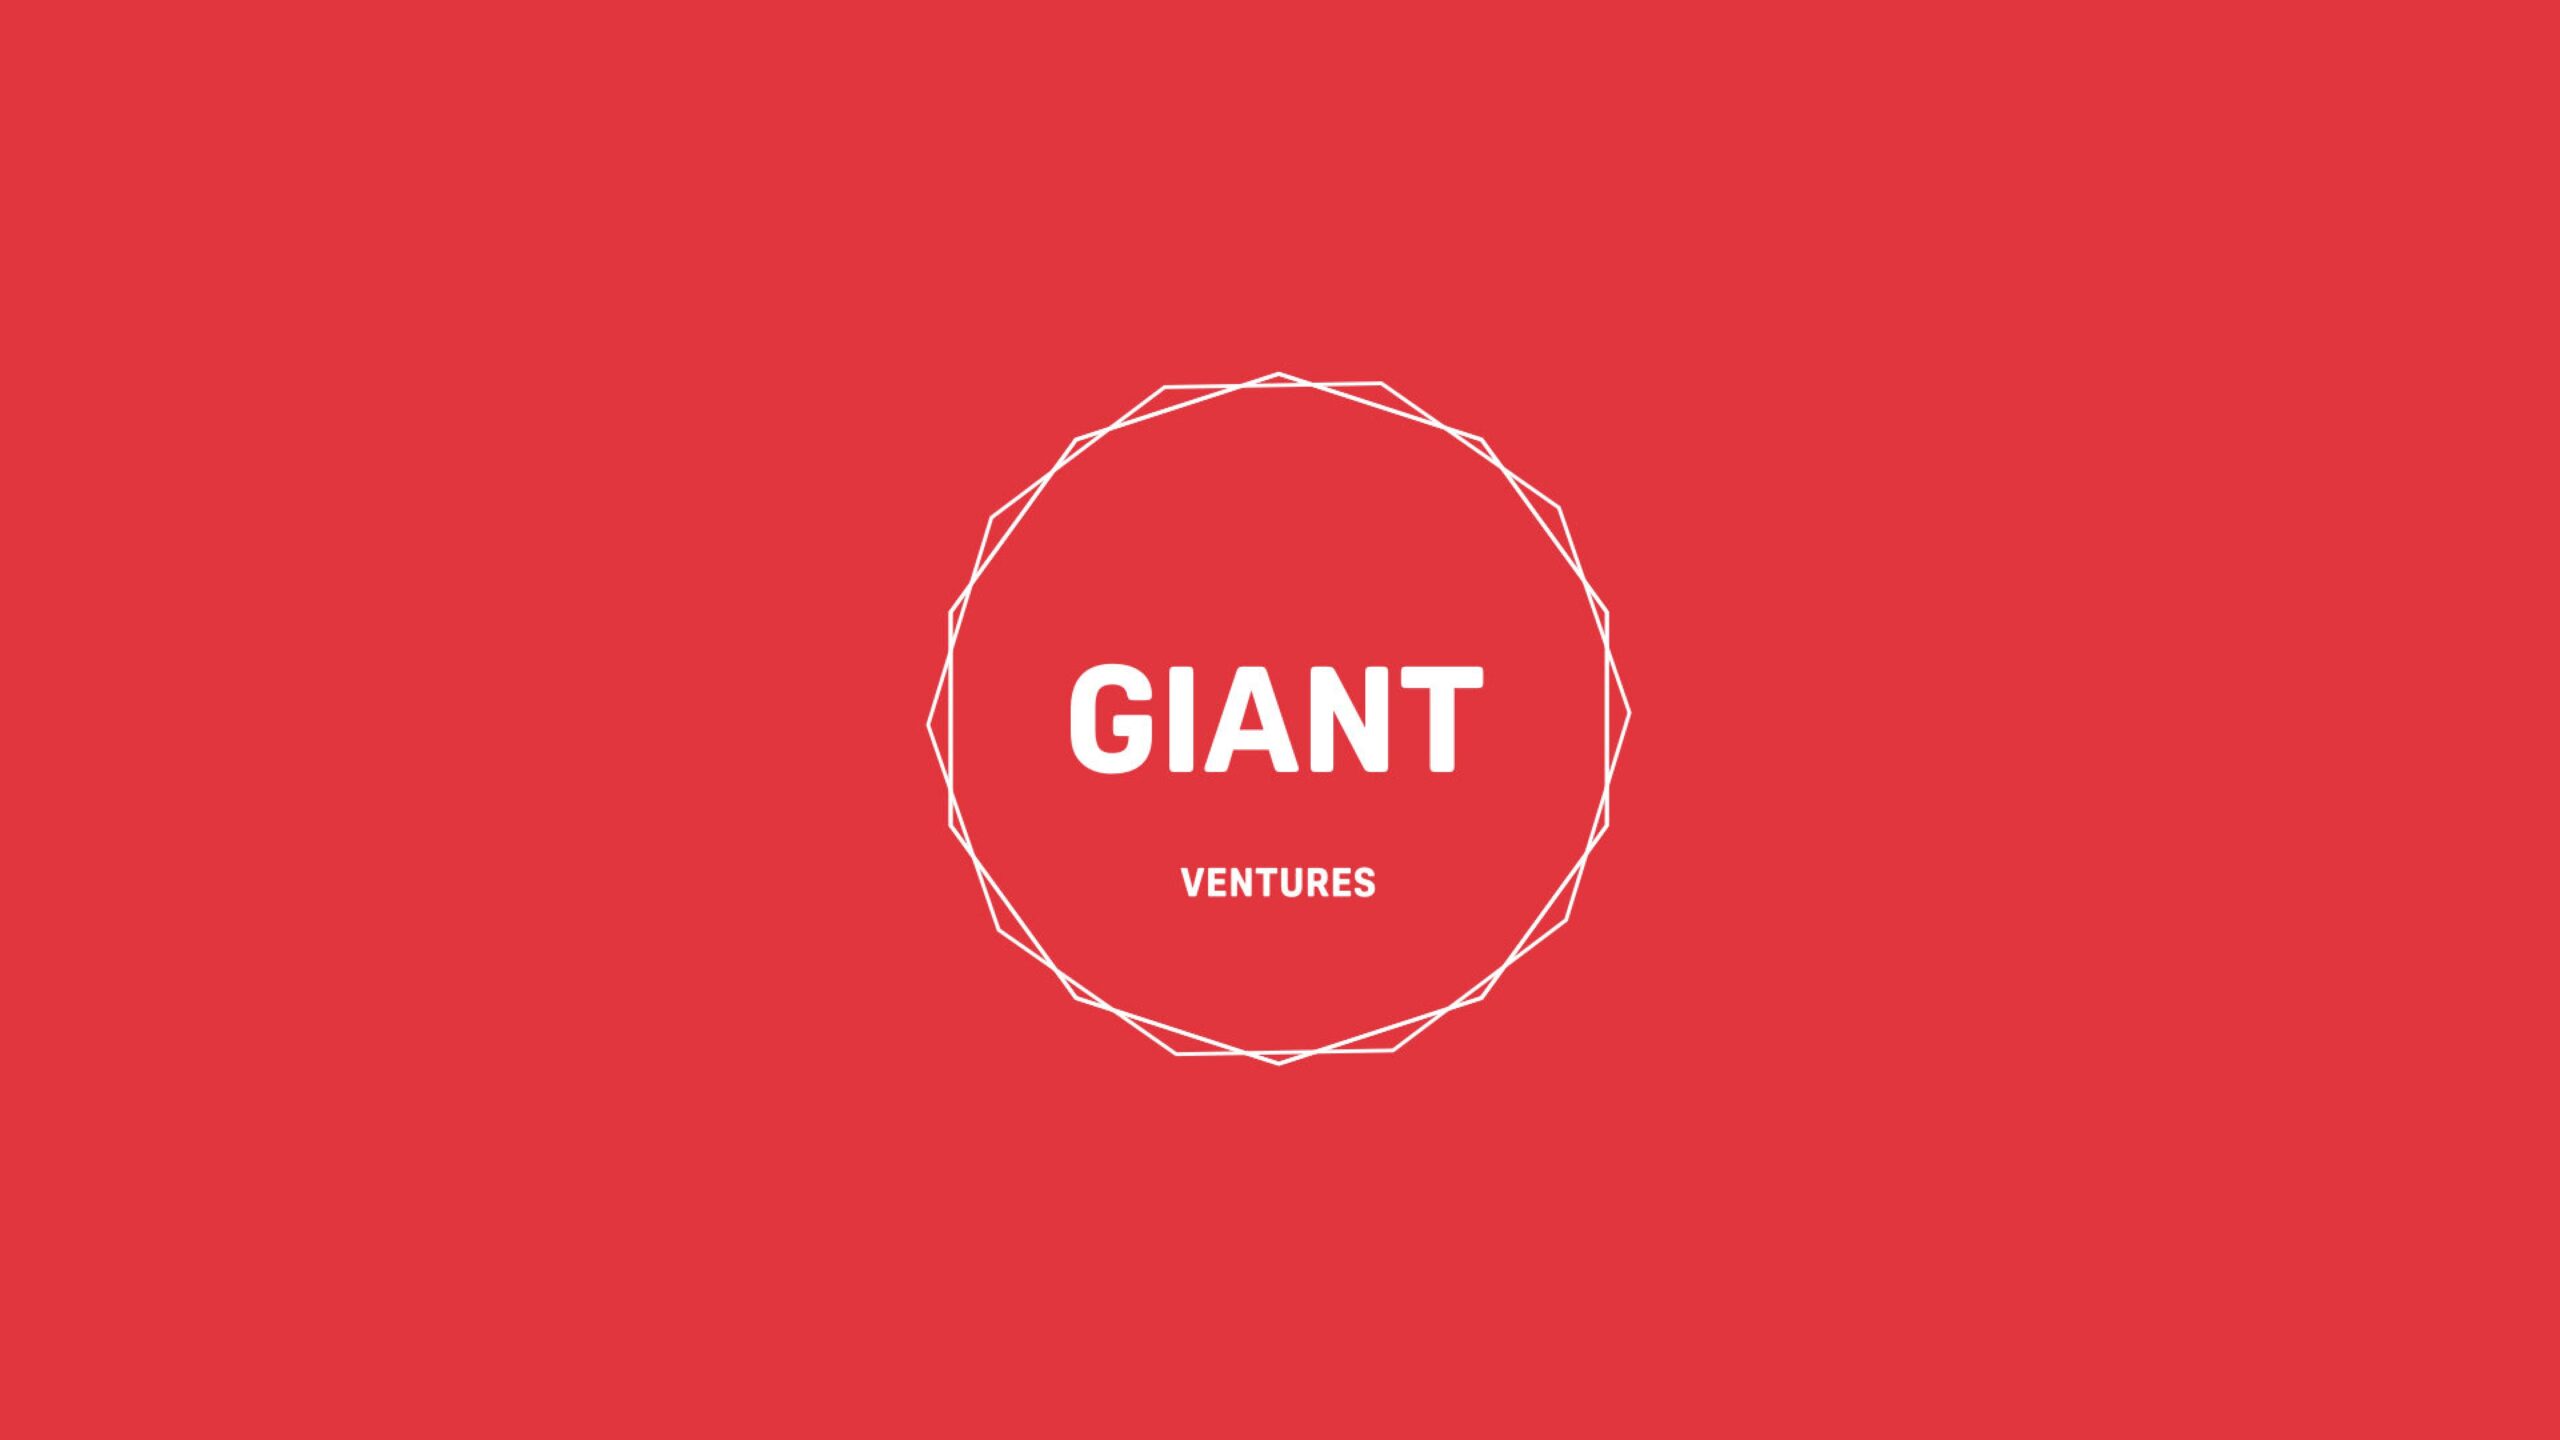 Giant Venturesが2億5,000万ドルを調達し、海外投資を開始